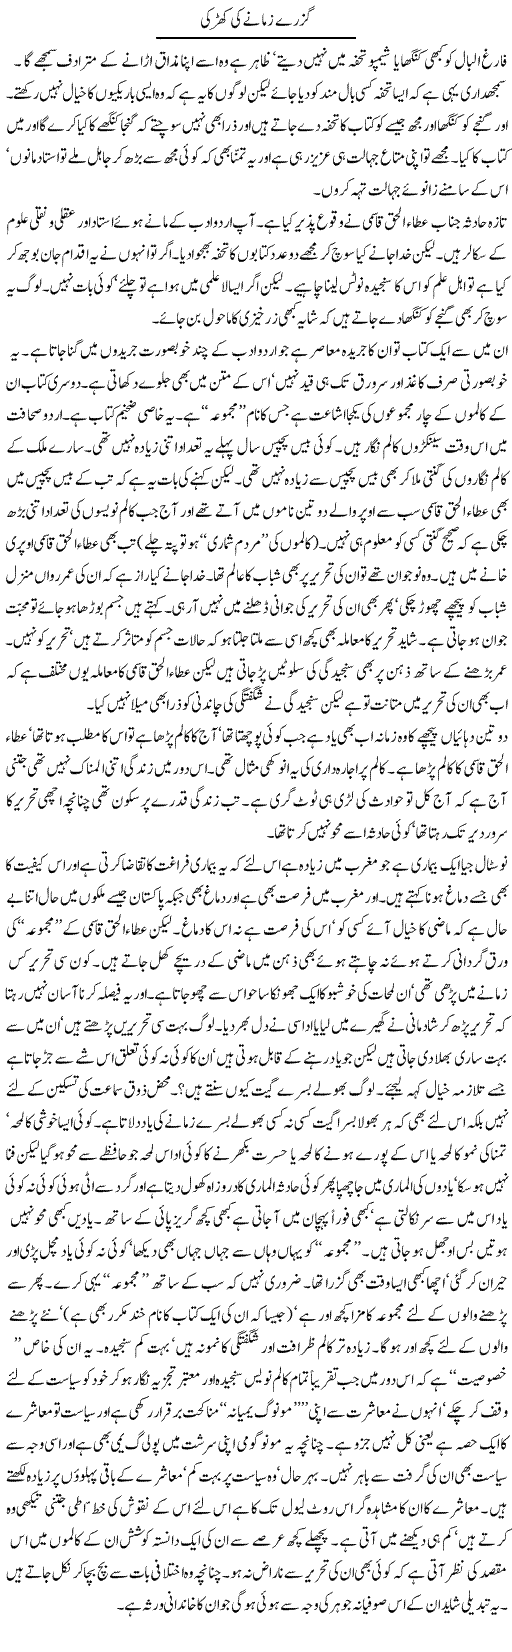 The Past Times Express Column Abdullah Tariq 1 February 2011